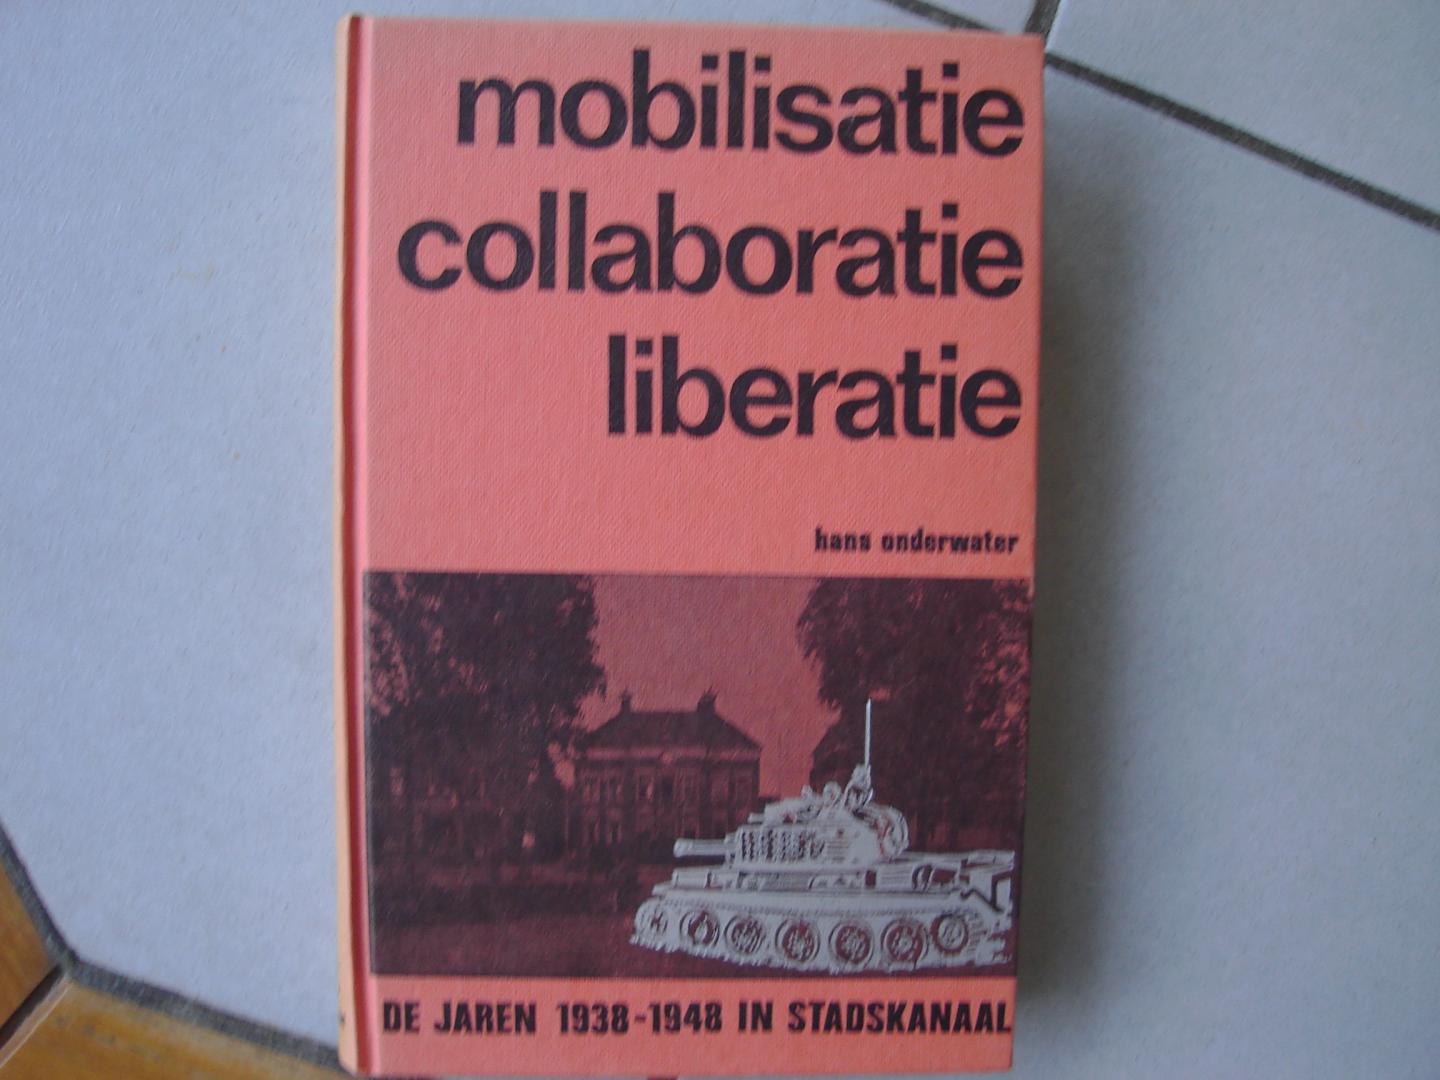 Hans Onderwater. - Mobilisatie Collaboratie Liberatie. De jaren 1938 - 1948 in Stadskanaal.